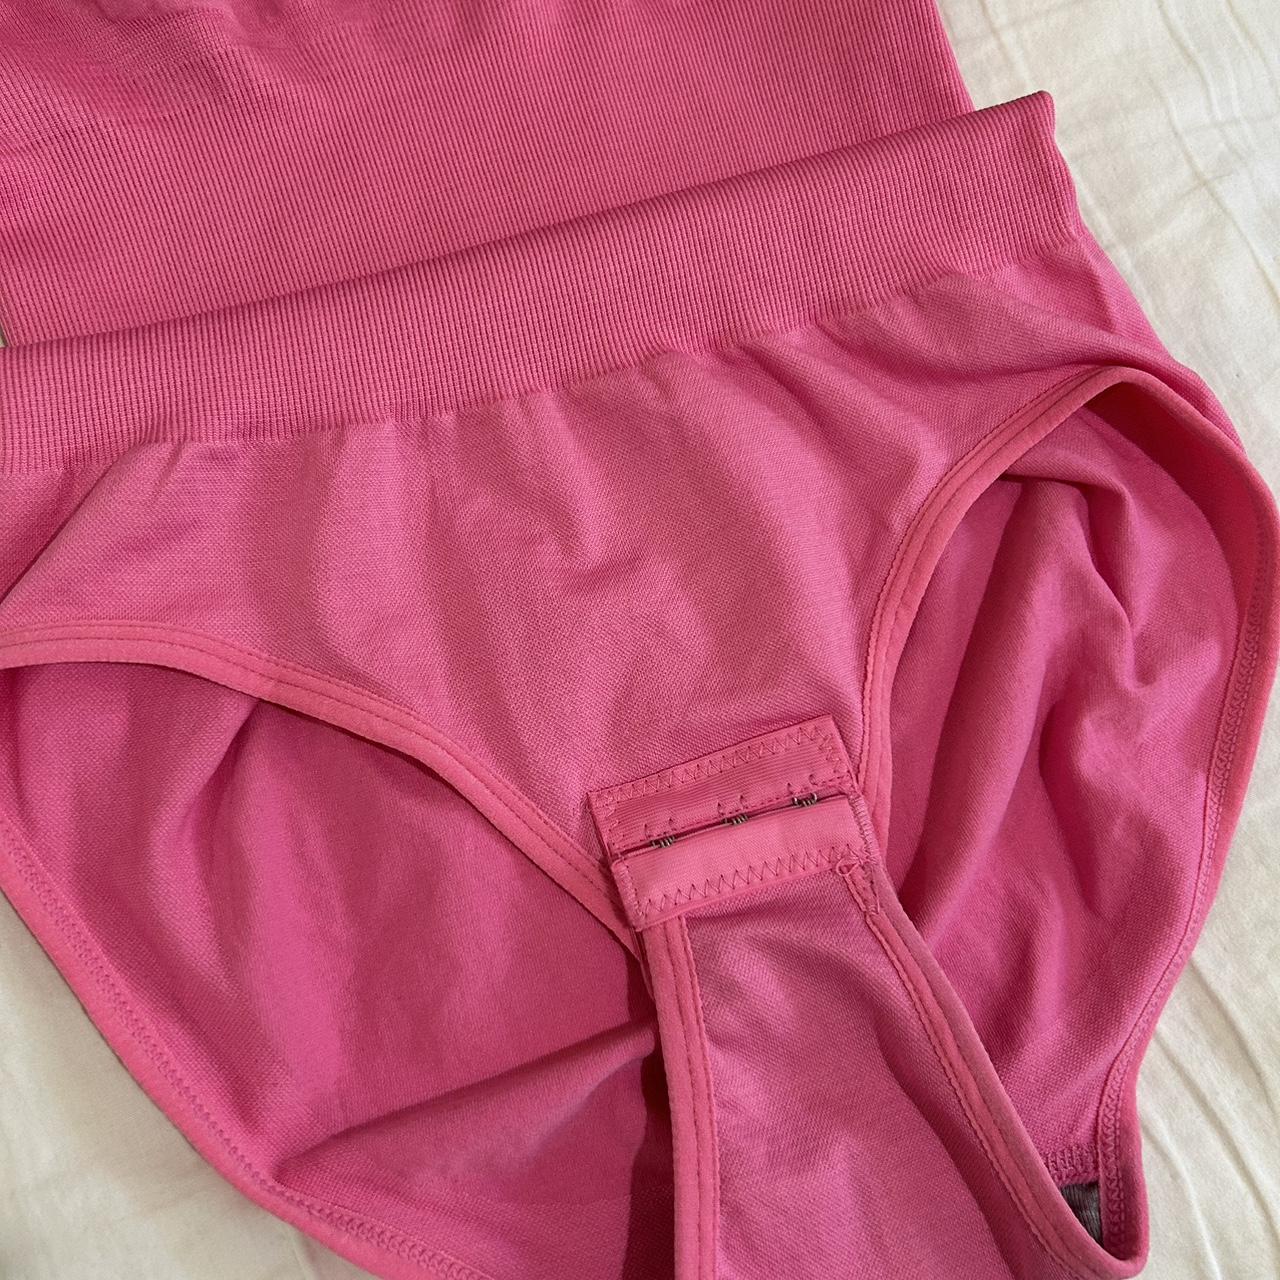 Pink Ploppydolly Bodysuit Women Shapewear size: - Depop